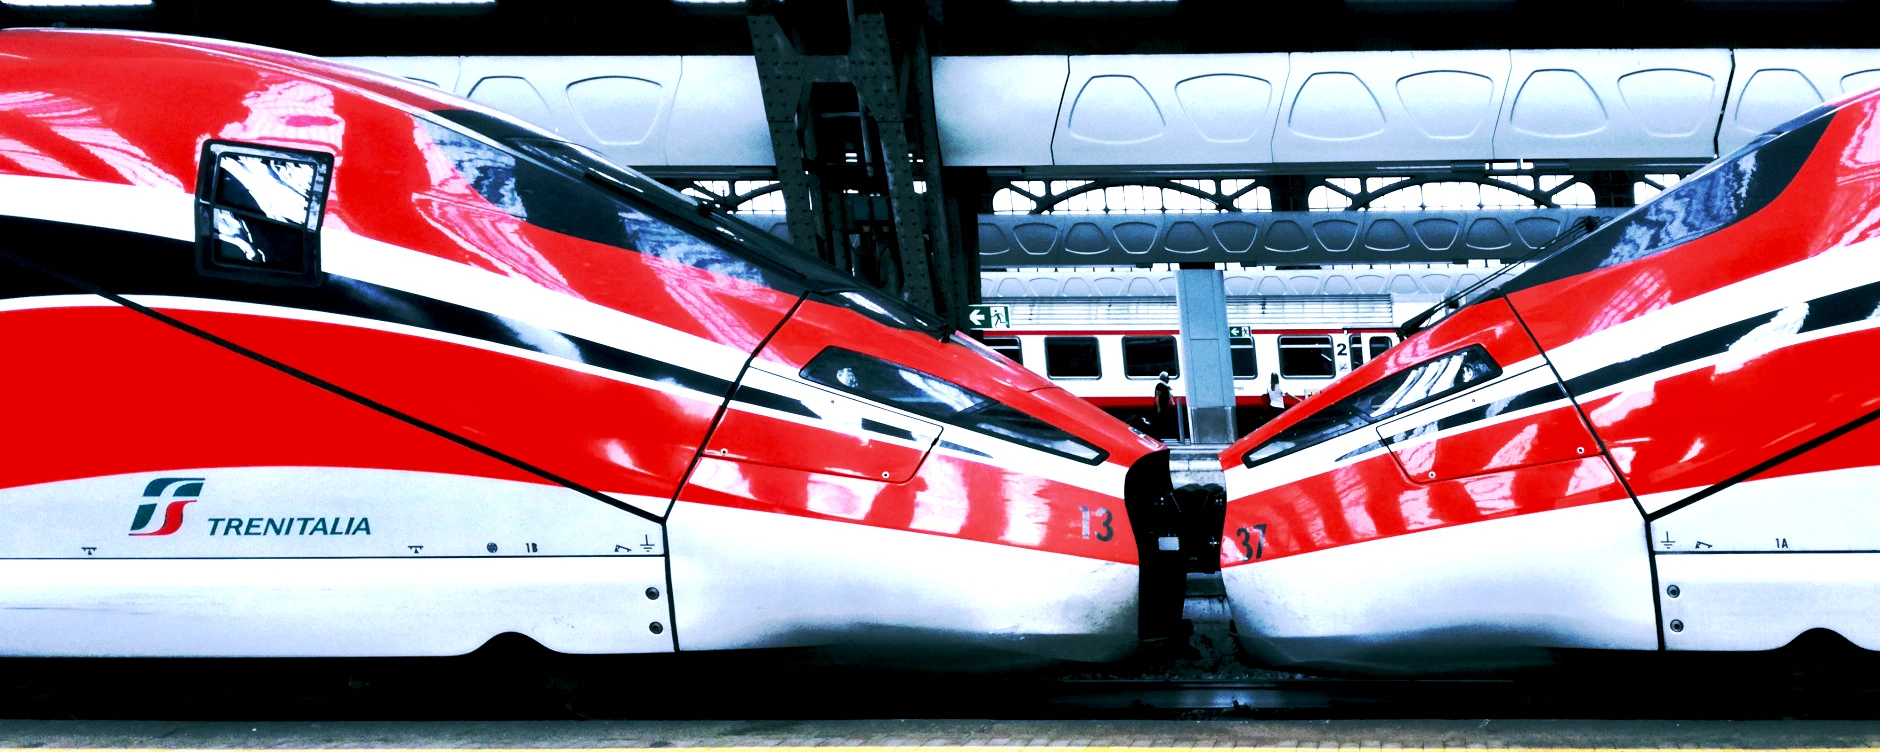 treni-alta-velocità-anodizzazione-nece-5